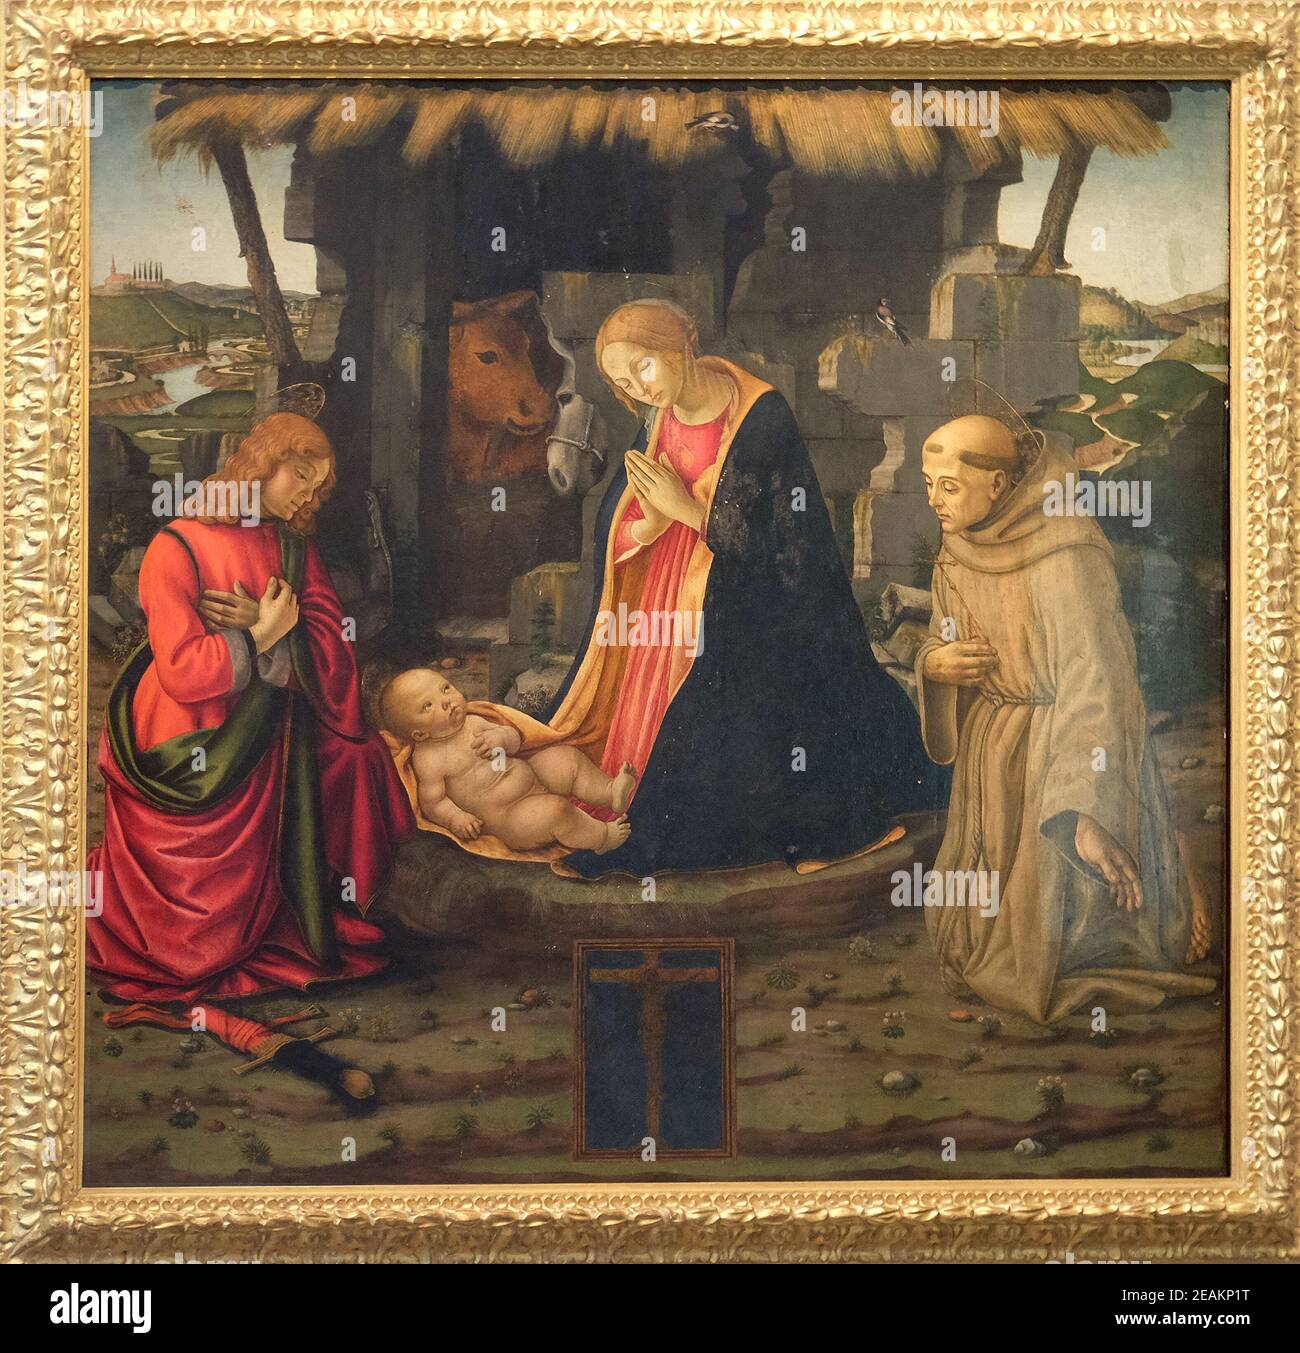 Scène de la nativité avec les saints Julien et Francis, de l'École de Domenico Ghirlandaio la basilique San Lorenzo à Florence, Italie Banque D'Images